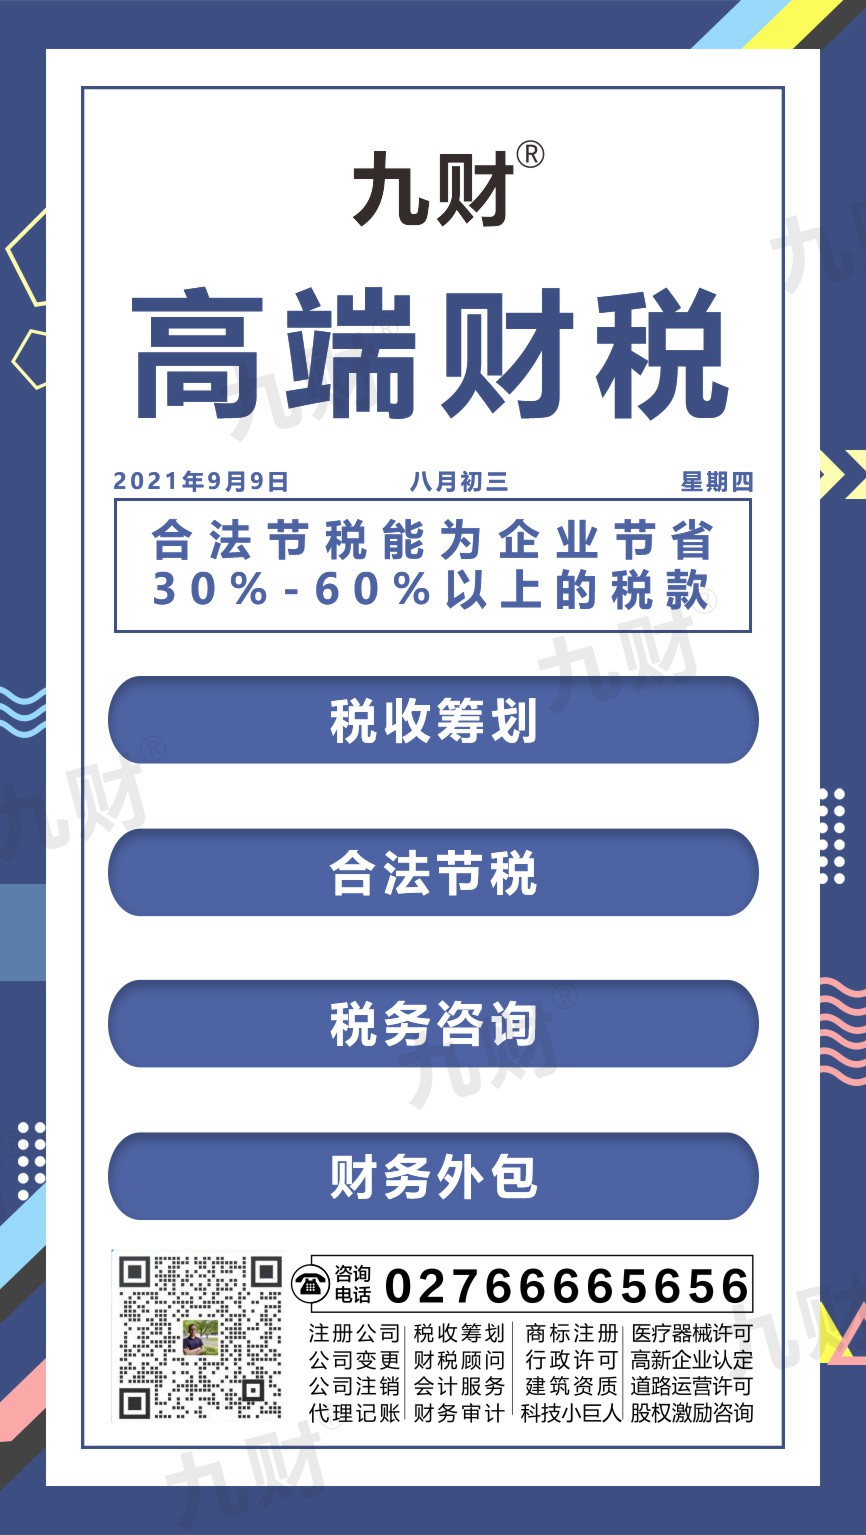 武汉东湖区股东变更网上如何填写资料申请